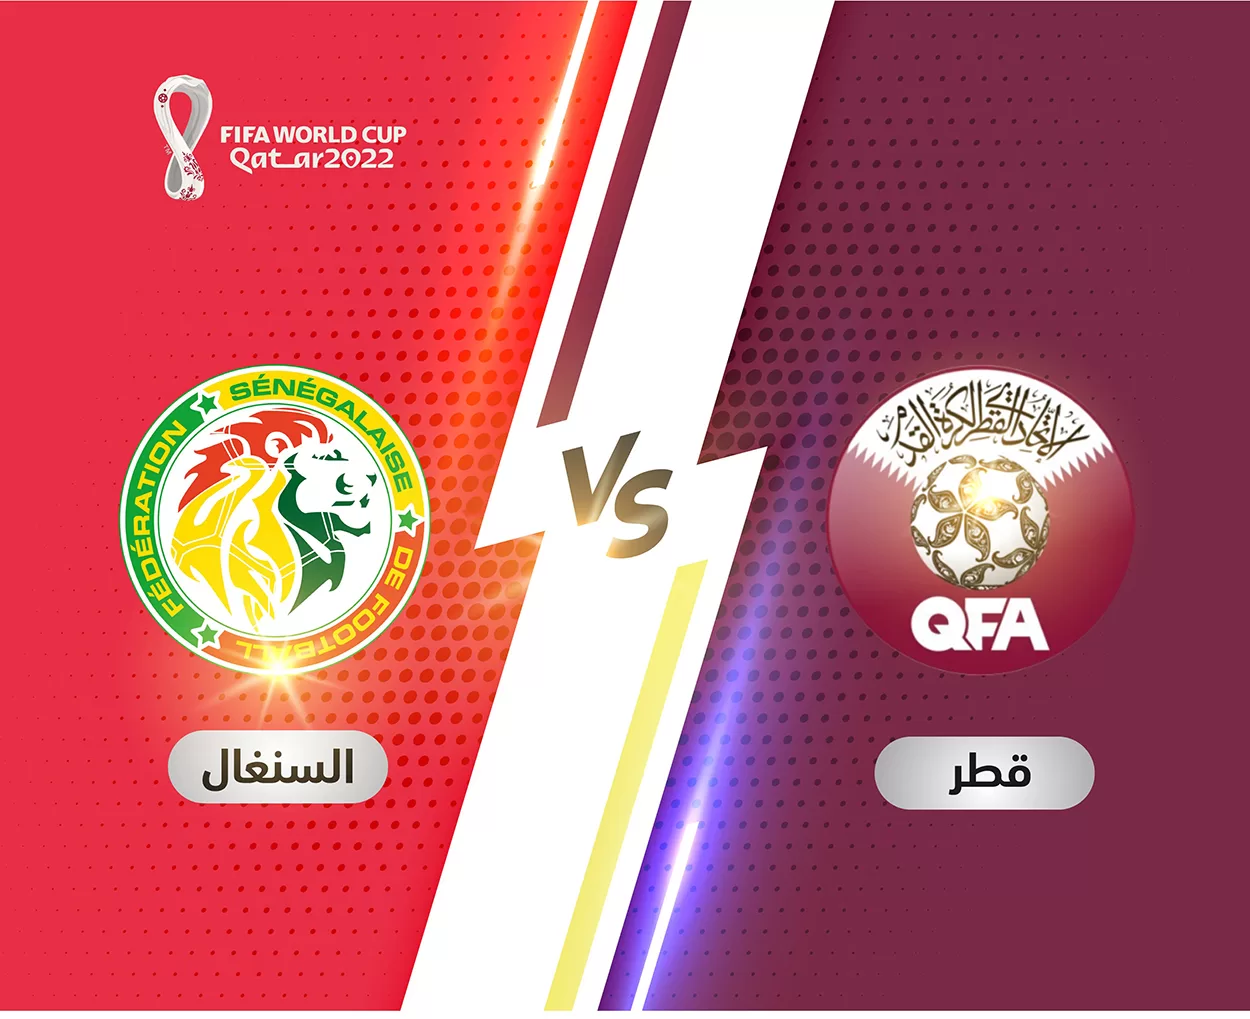 موعد وتوقيت مباراة قطر والسنغال في كأس العالم 2022 والقنوات الناقلة